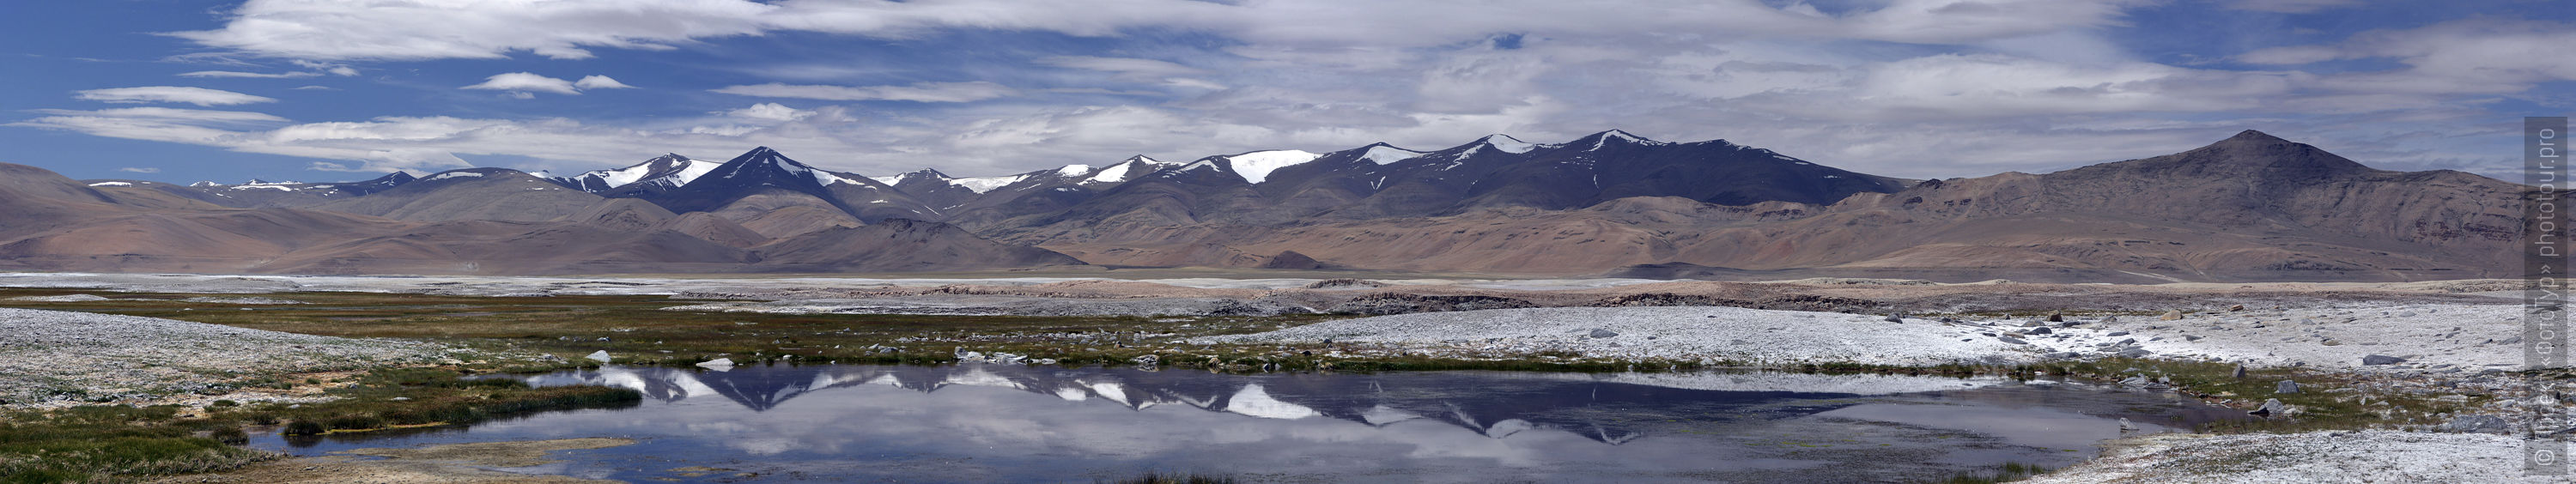 ВТур по высокогорным озерам Тибета, сентябрь 2016 года.